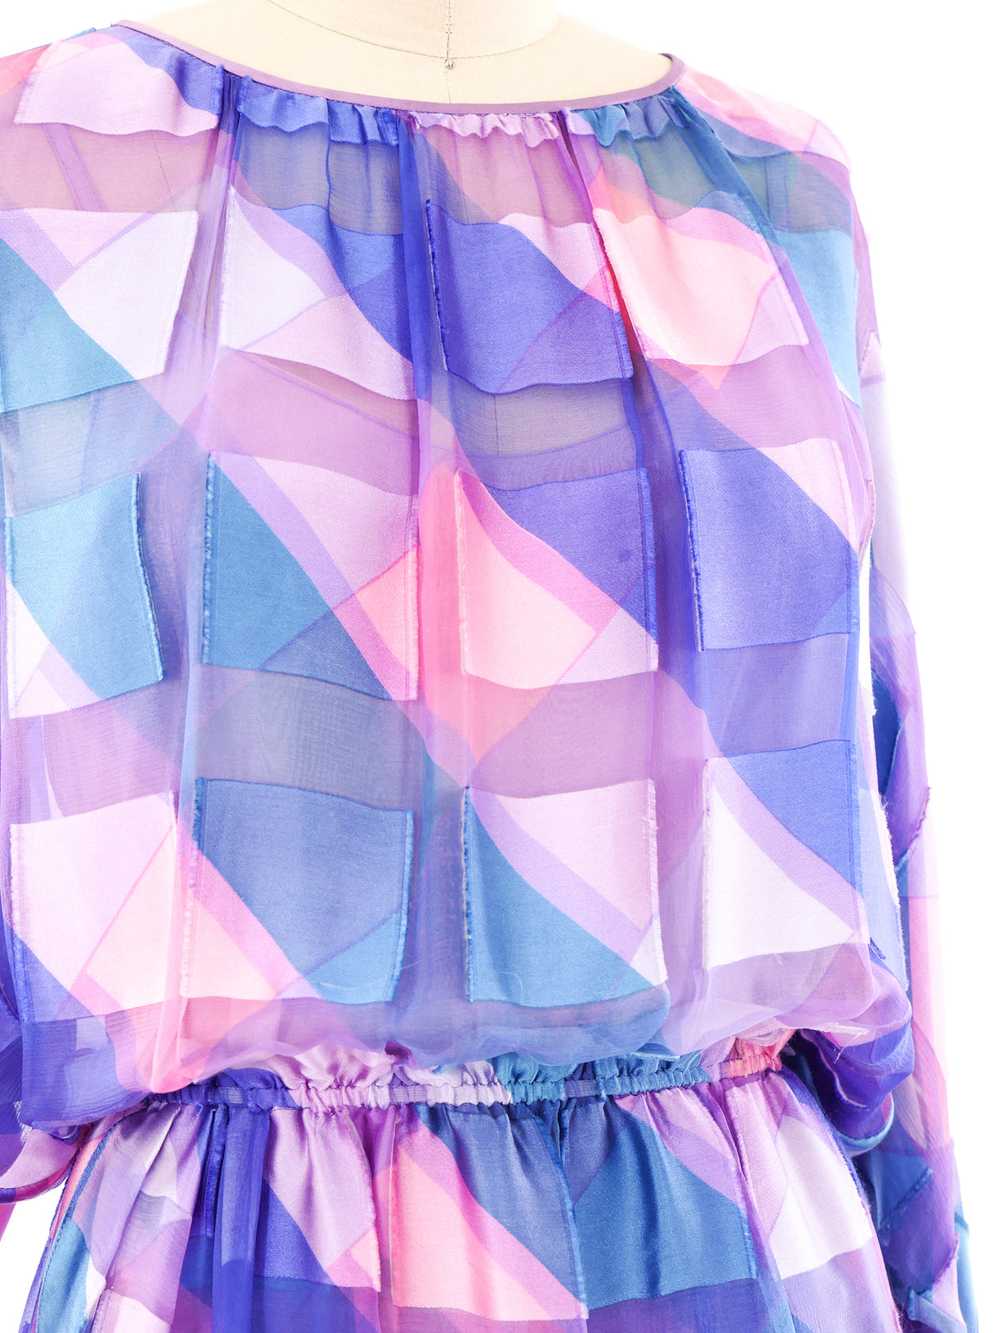 Pastel Striped Jacquard Silk Chiffon Dress - image 4